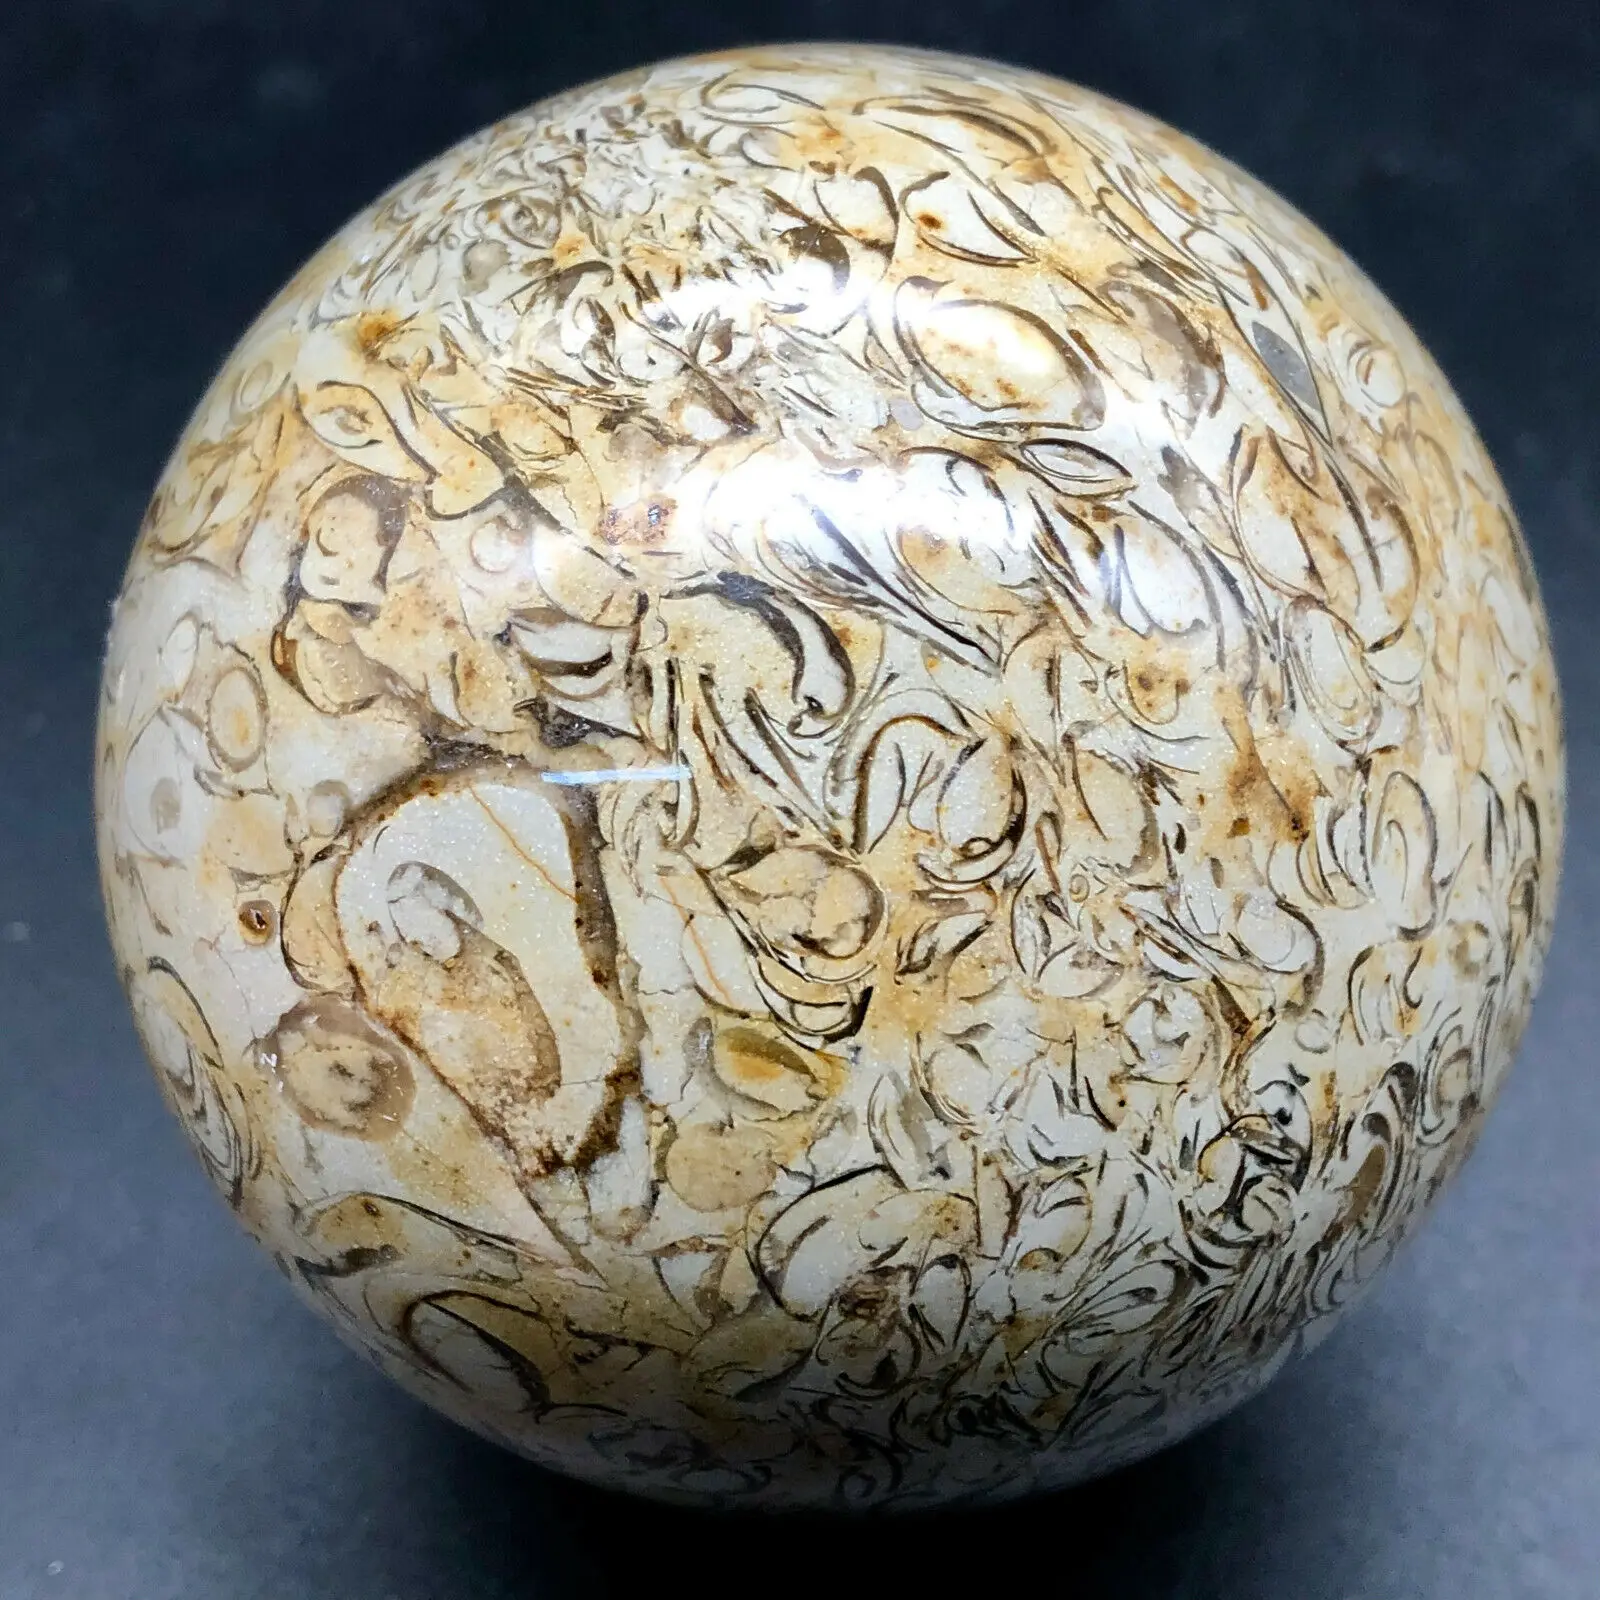 Природный динозавр костной окаменелой сферы хрустальный шар натуральный мадагаскарский камень целебный кристалл